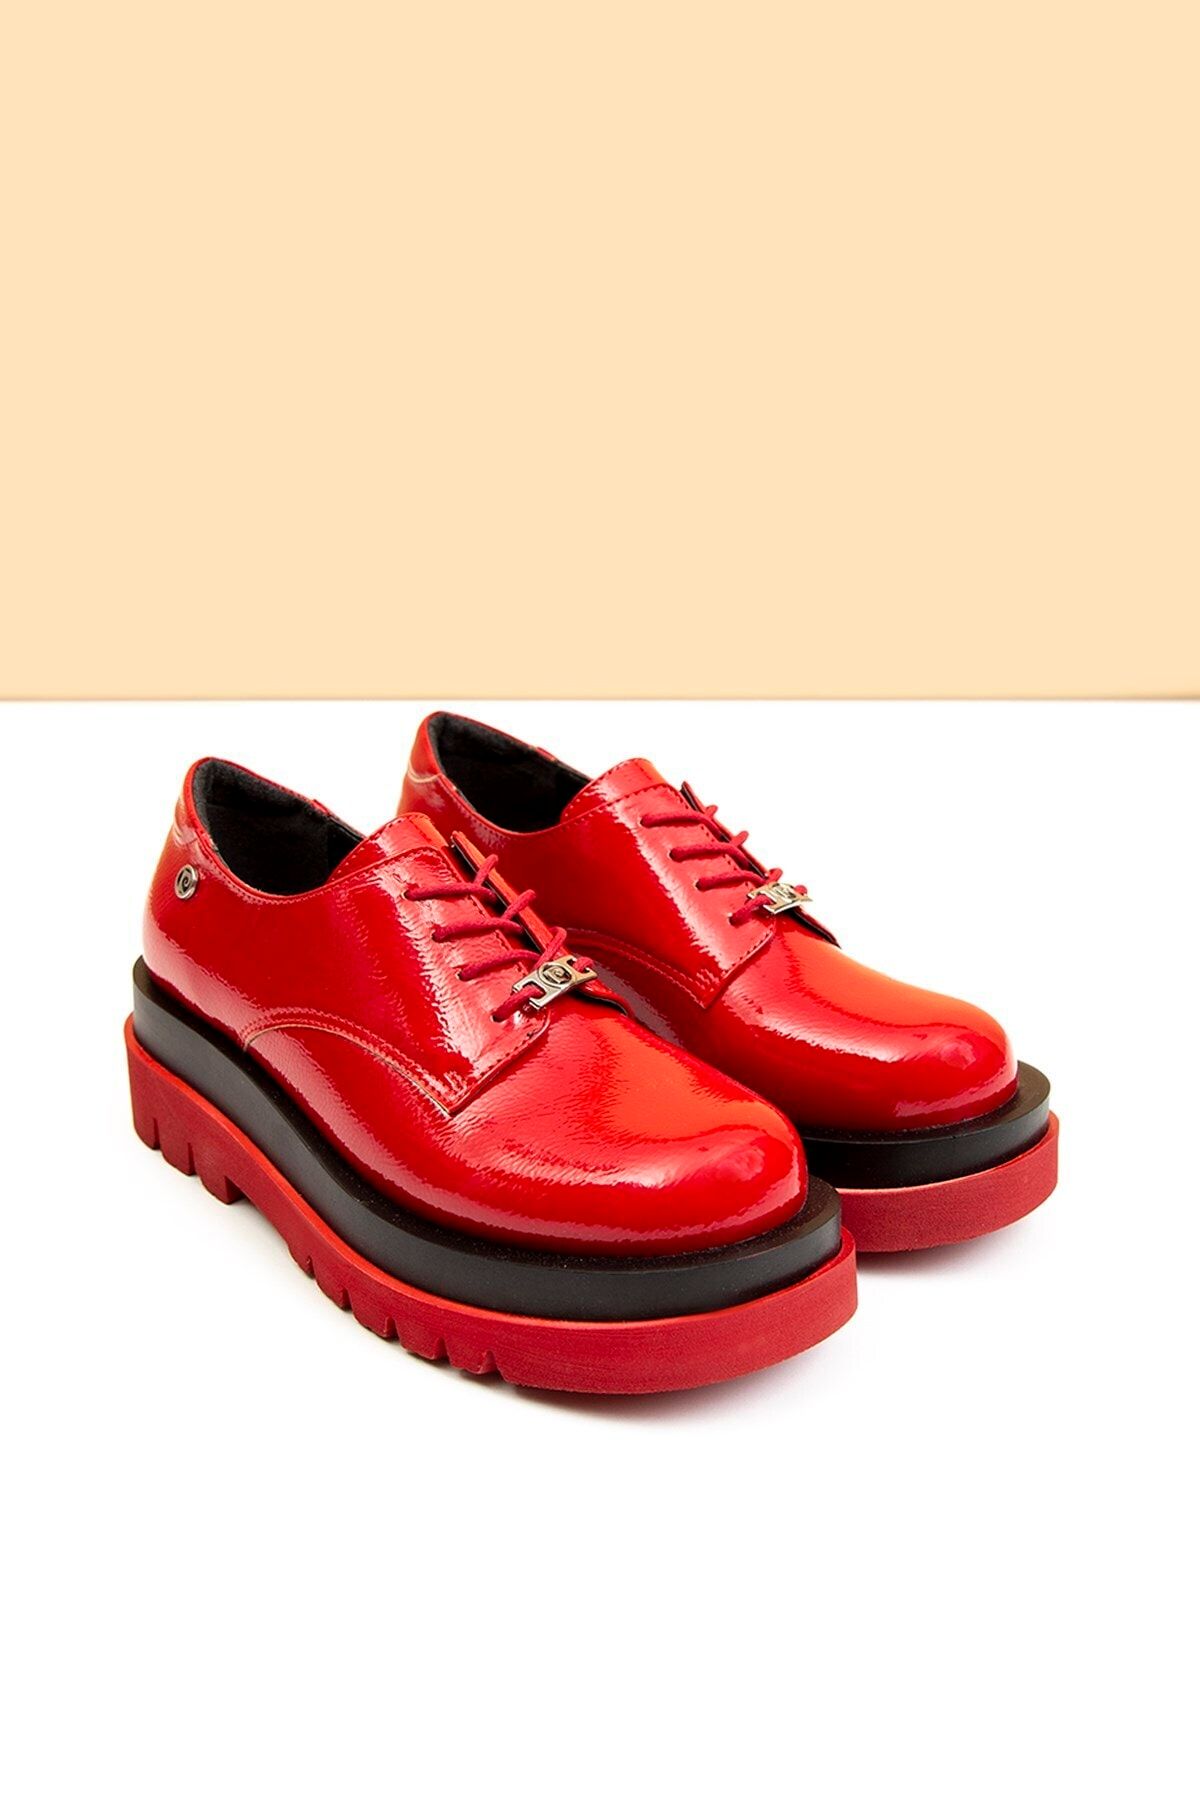 Pierre Cardin Pc-50827 Rugan Kırmızı Kadın Ayakkabı